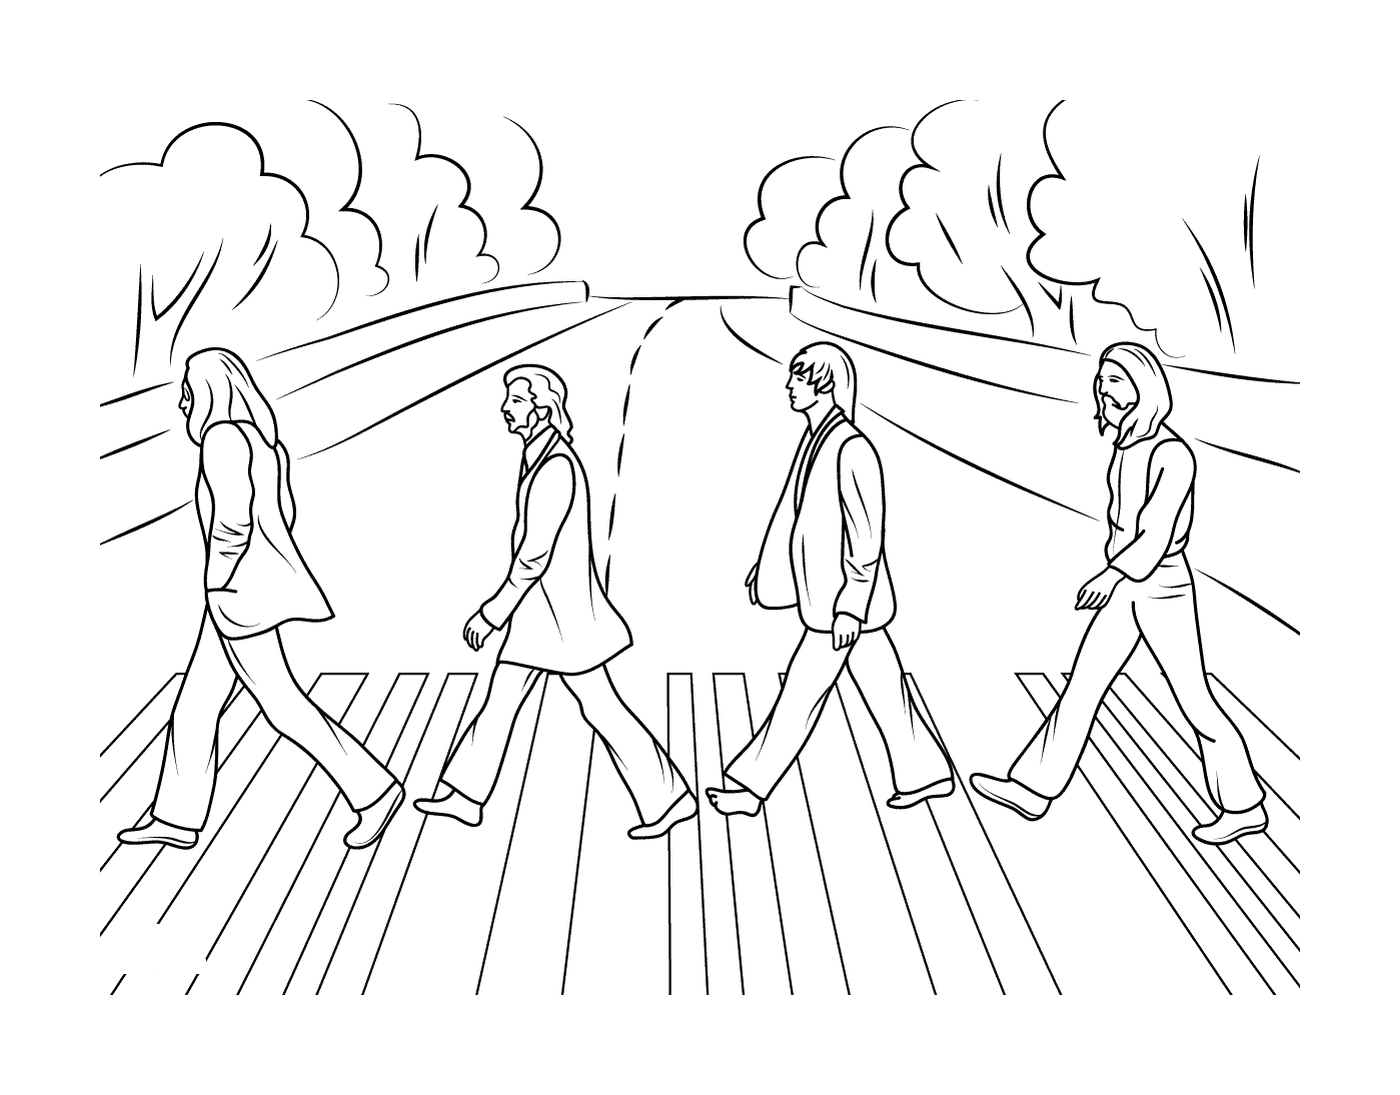  Un grupo de personas cruzando una calle 